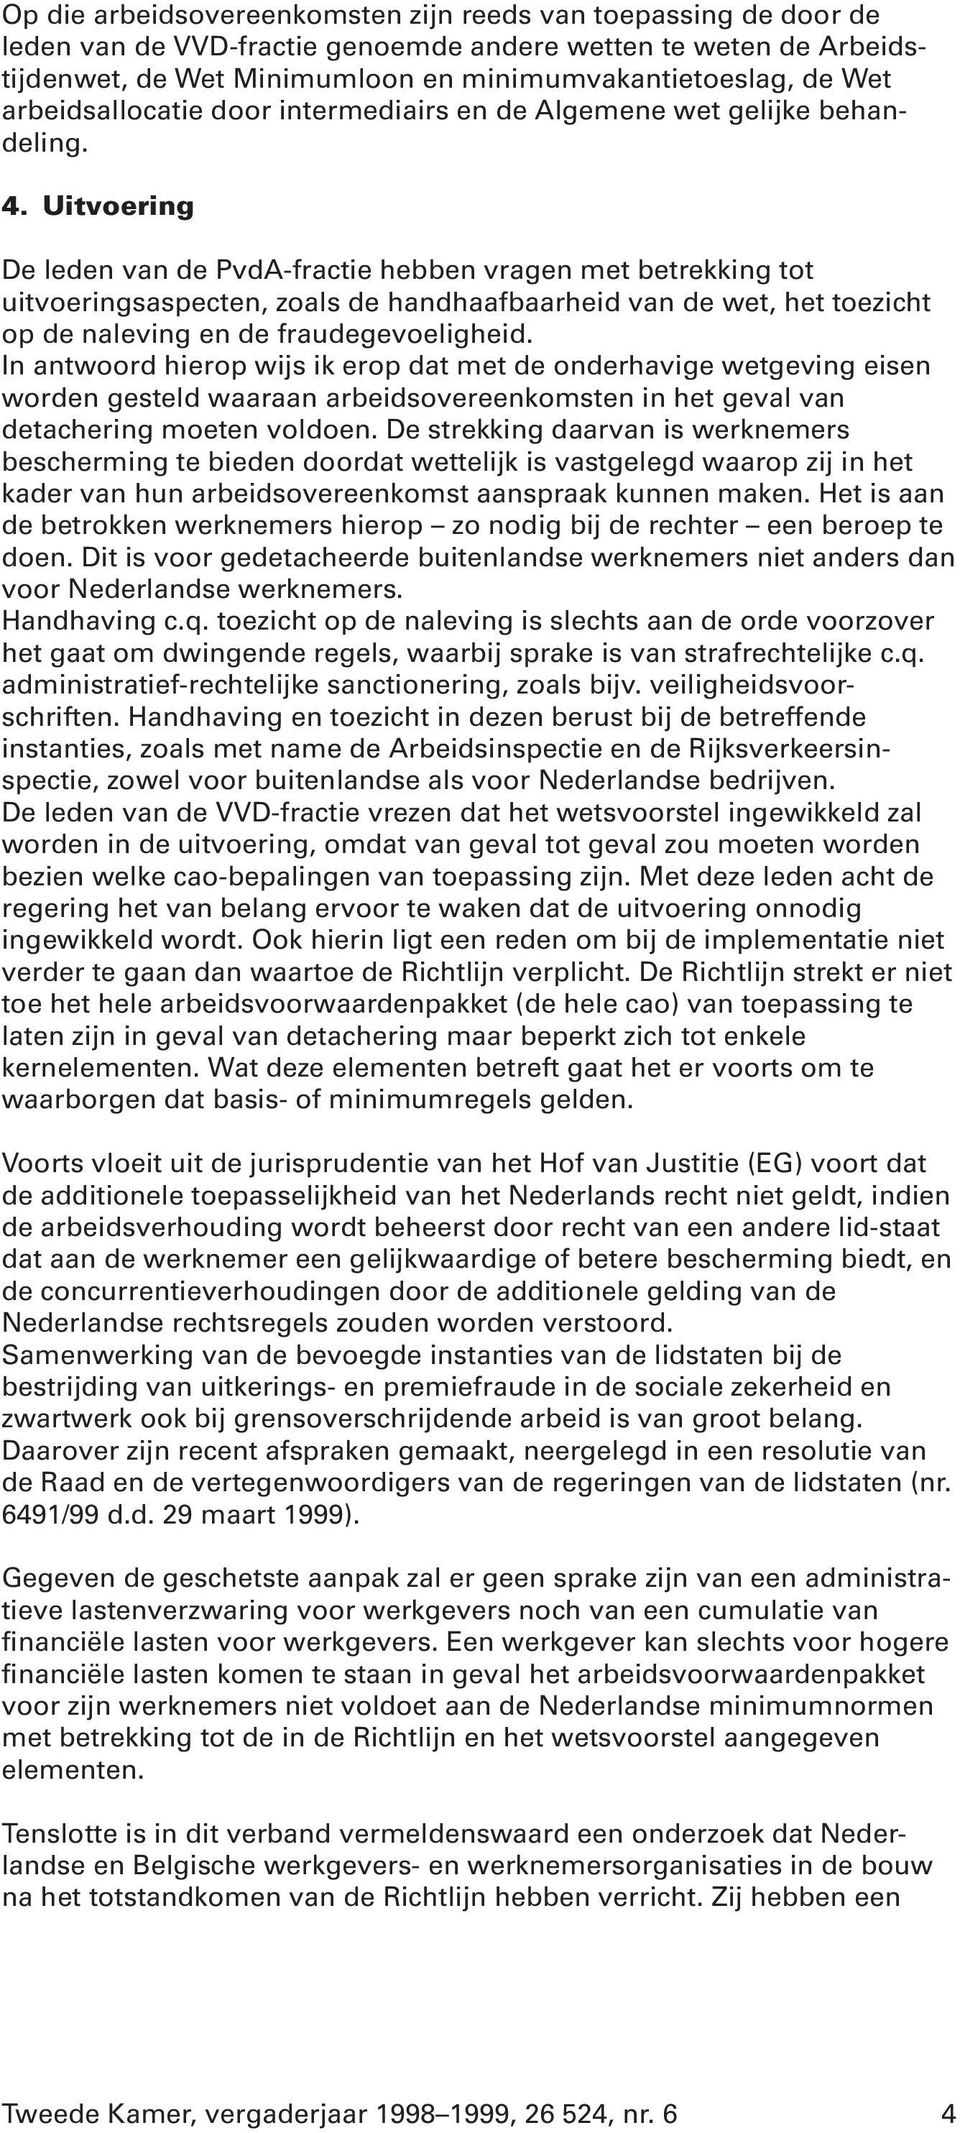 Uitvoering De leden van de PvdA-fractie hebben vragen met betrekking tot uitvoeringsaspecten, zoals de handhaafbaarheid van de wet, het toezicht op de naleving en de fraudegevoeligheid.